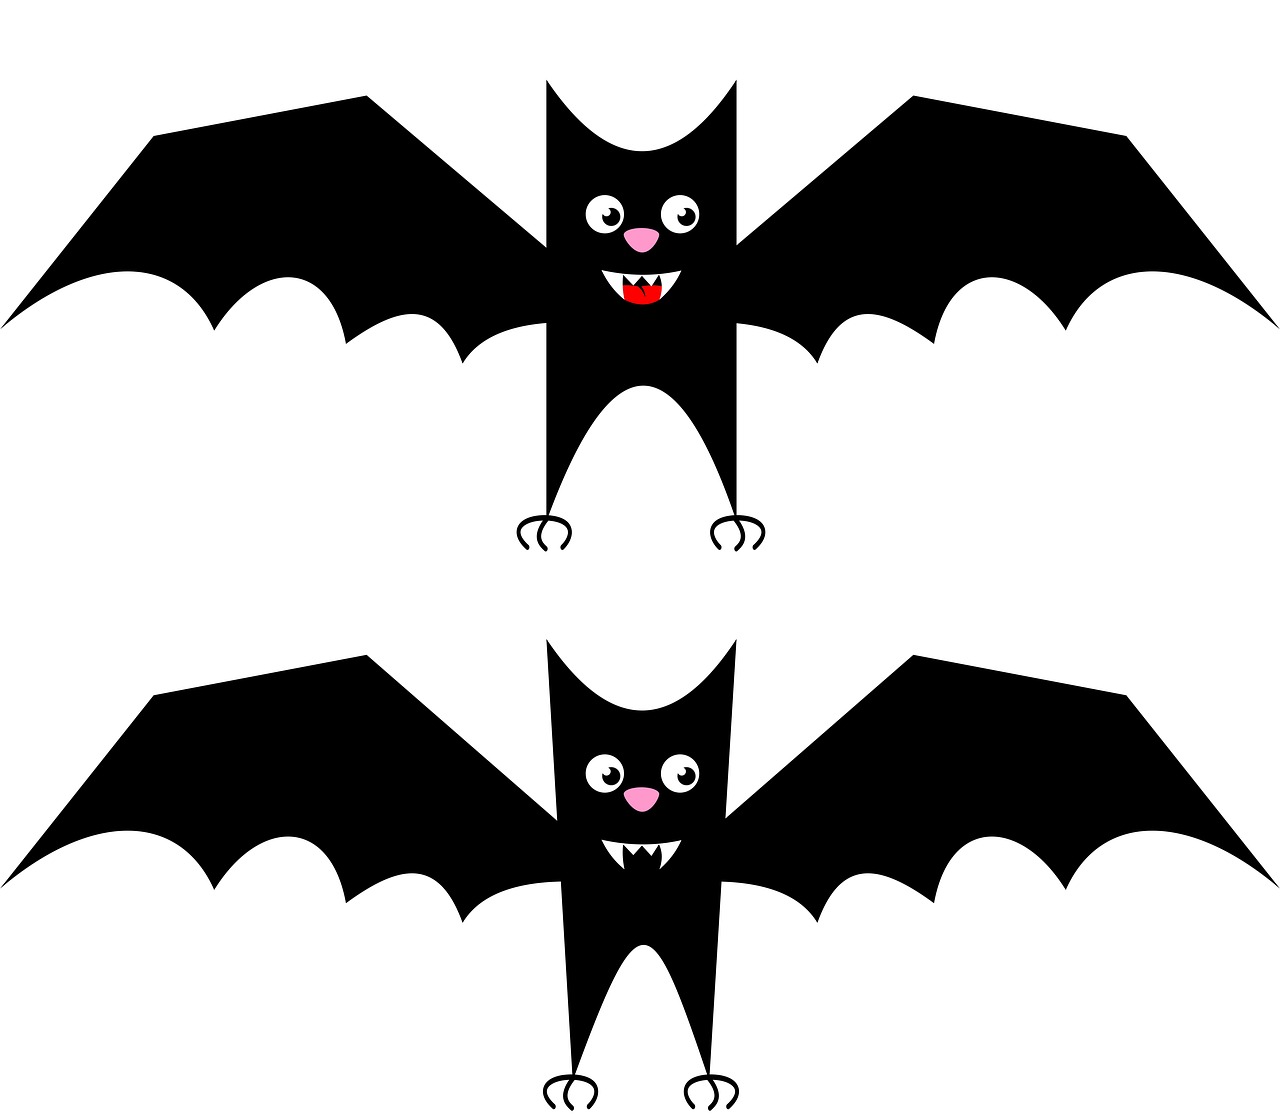 buy me a coffee bat mammal free photo